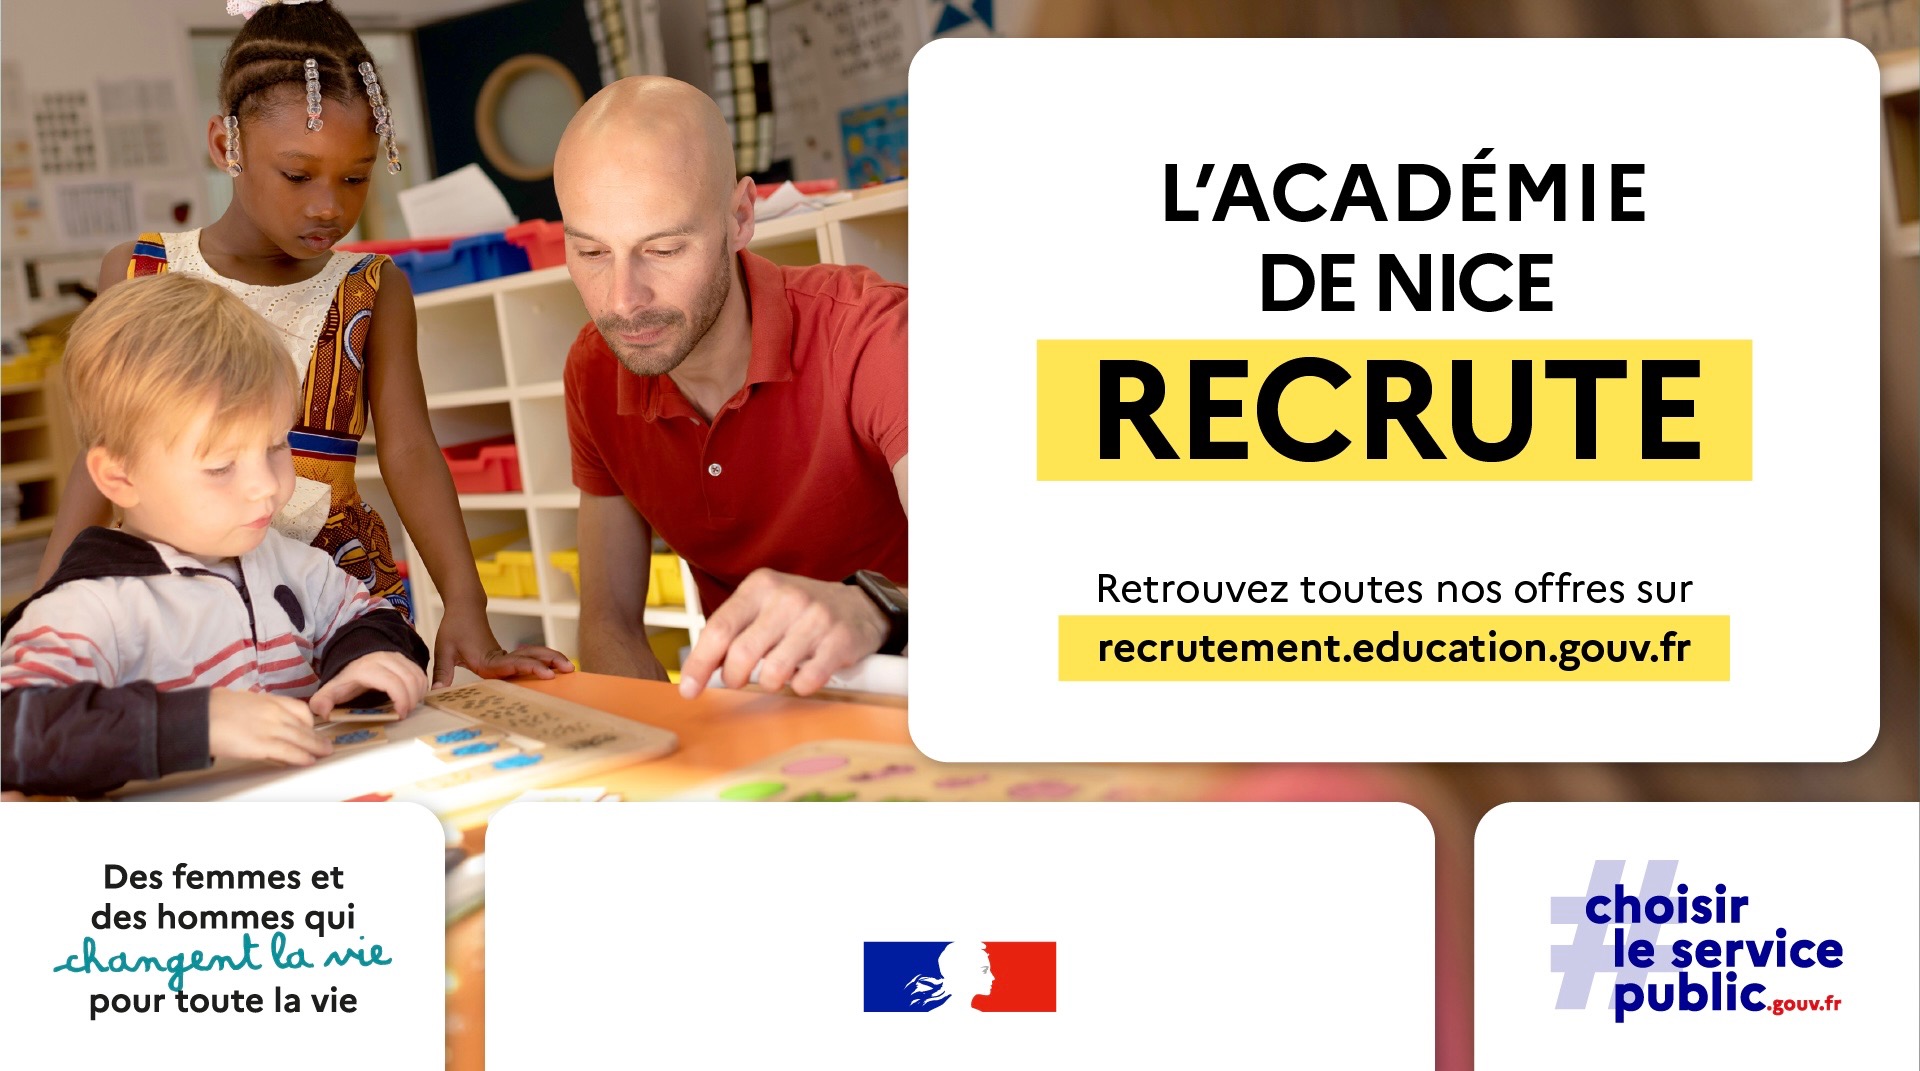 L'académie de Nice recrute. Retrouvez toutes nos offres sur recrutement.education.gouv.fr